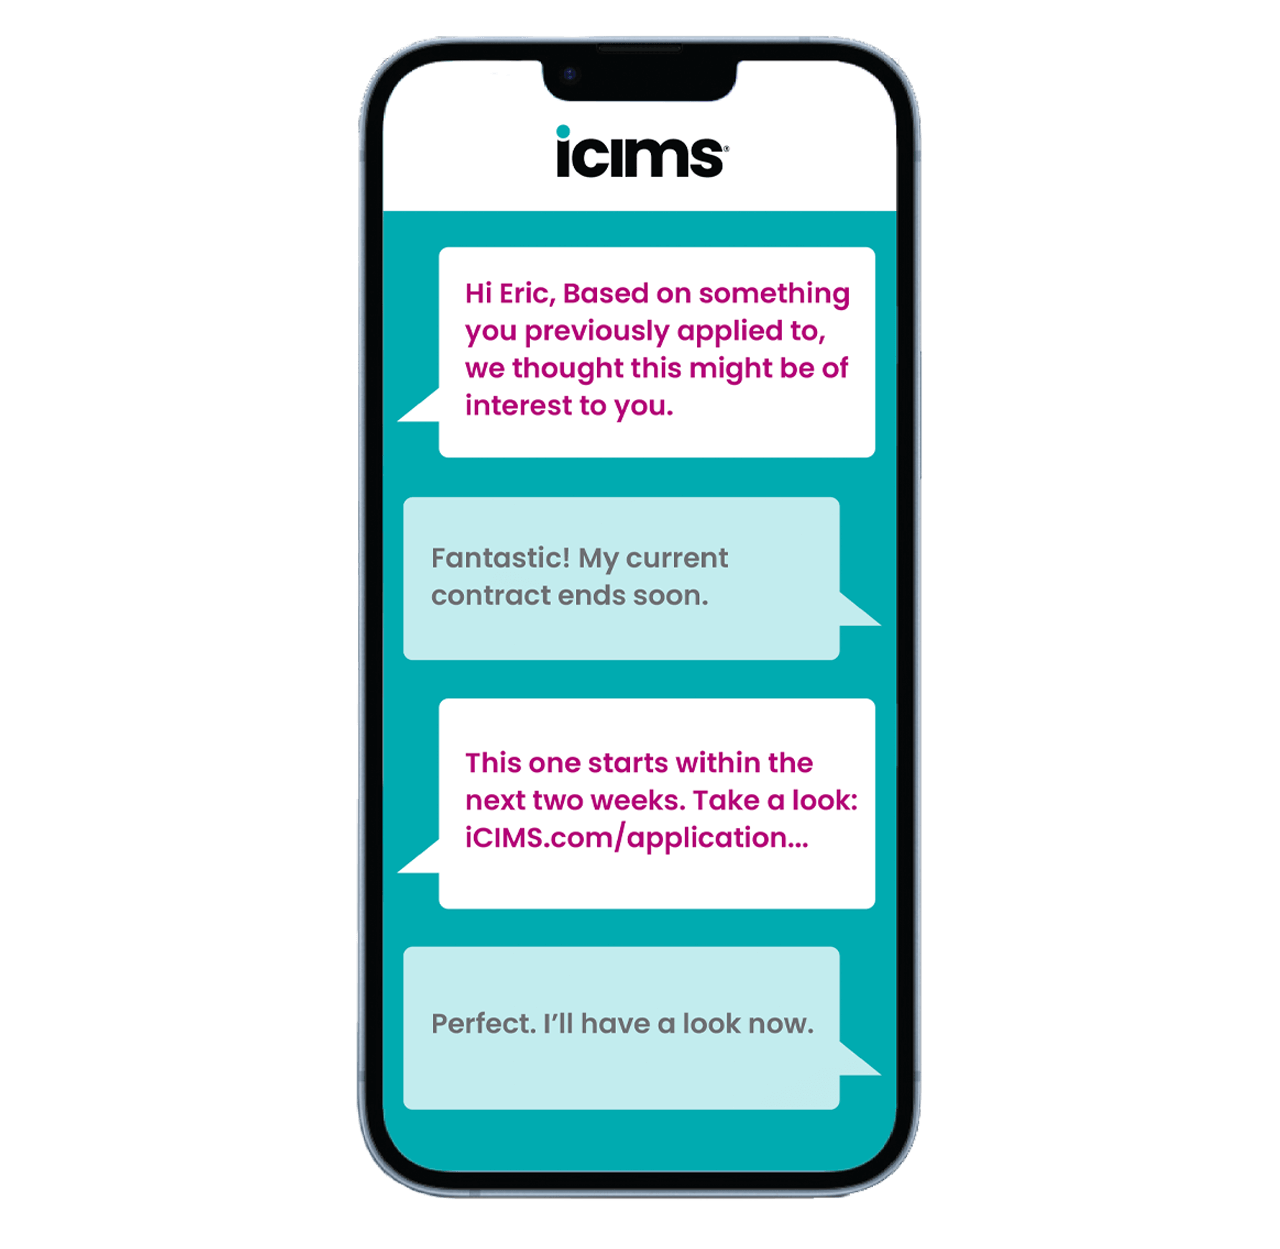 Représentation d'un smartphone affichant une conversation entre un candidat et l'IA conversationnelle d'iCIMS